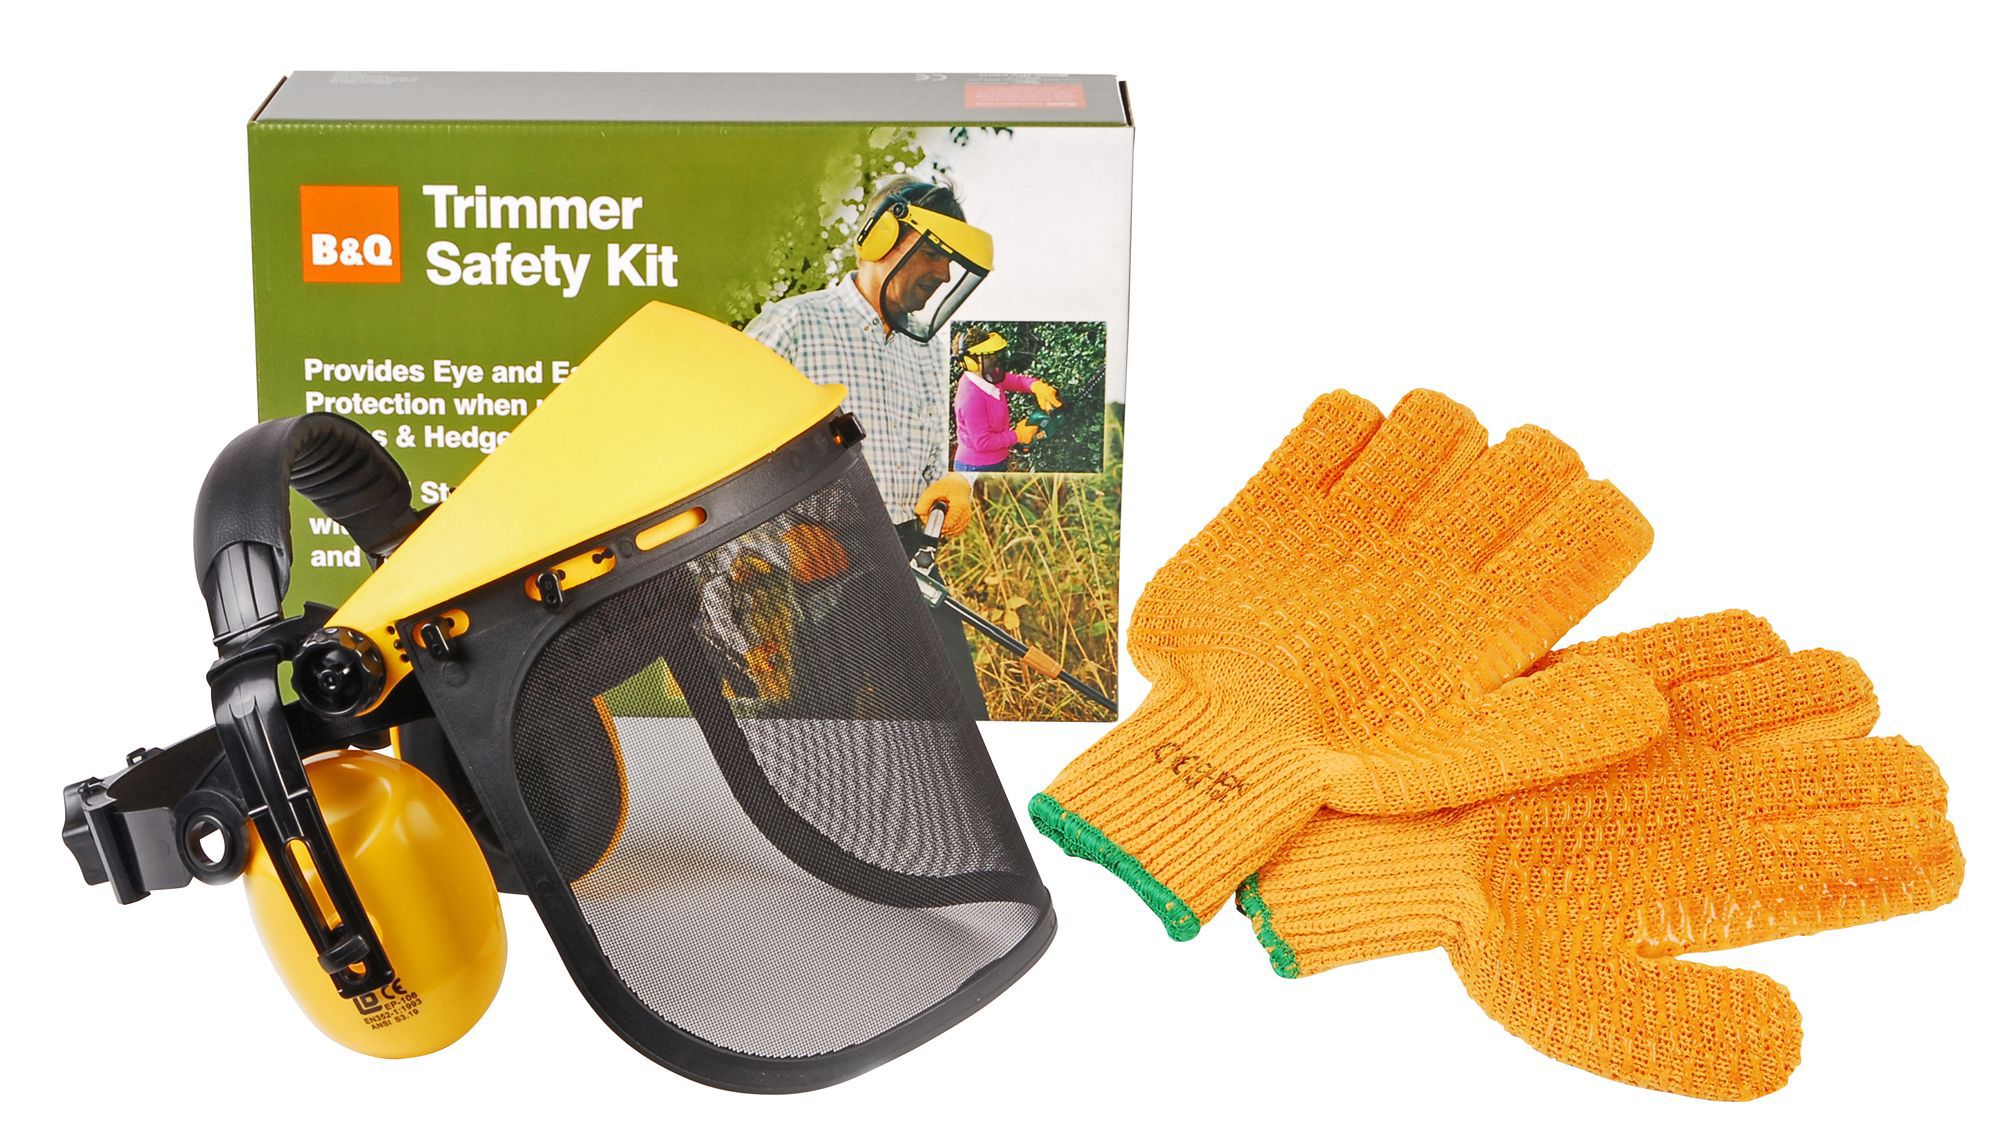 B&Q Trimmer safety kit